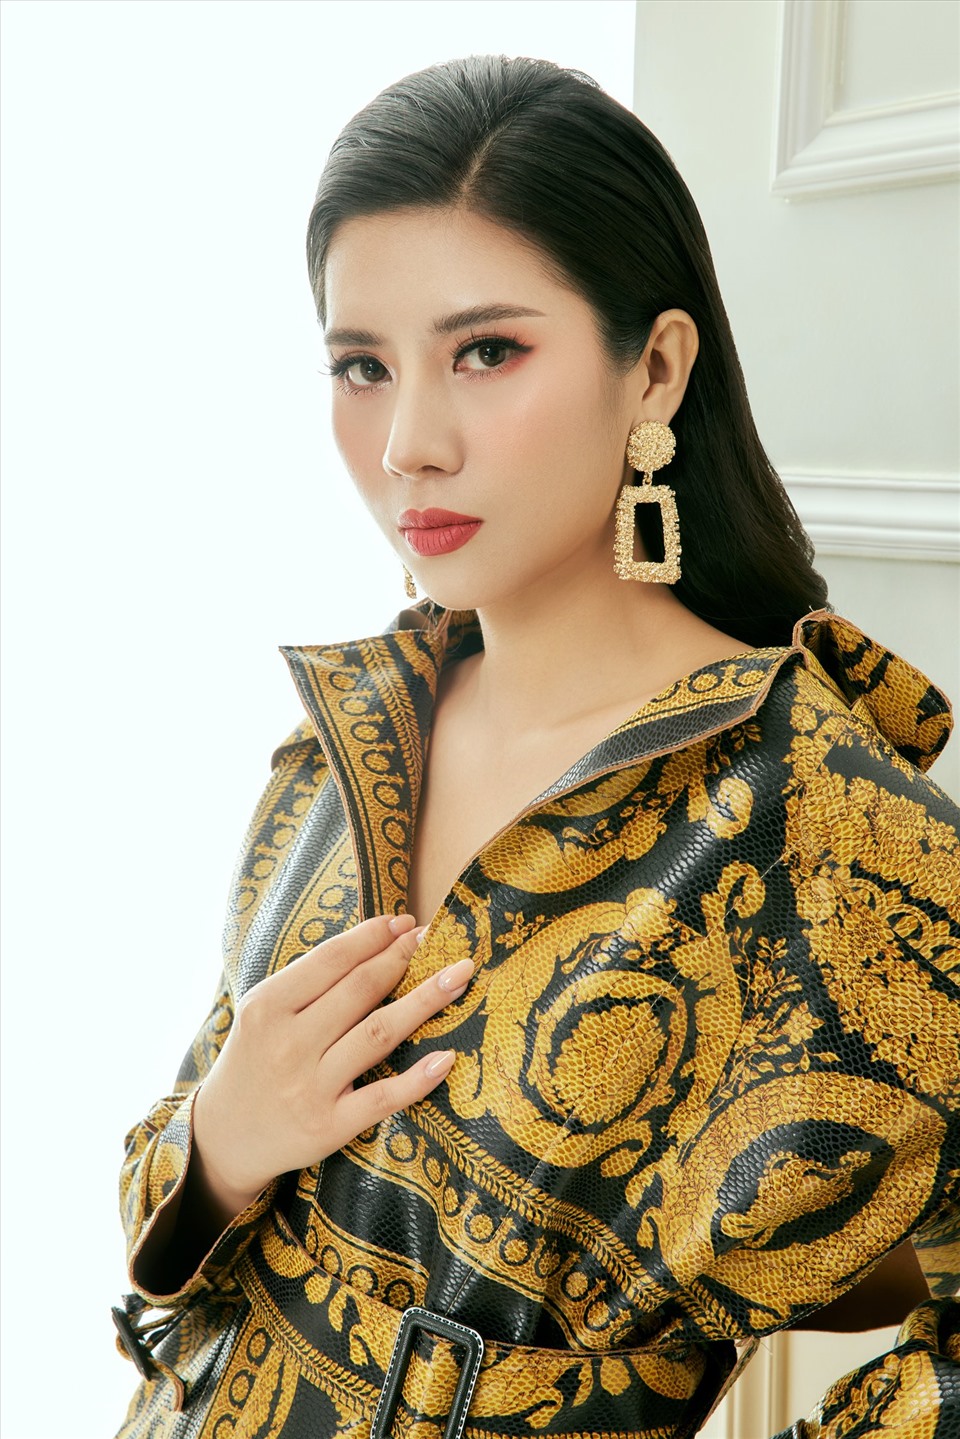 Mới đây, để khởi động một năm 2021 nhiều màu sắc và mới mẻ, Dương Yến Nhung đã tung bộ ảnh thời trang, biến hoá ở nhiều phong cách trong những bộ trang phục sang trọng, thanh lịch gắn liền với hình ảnh của mình.